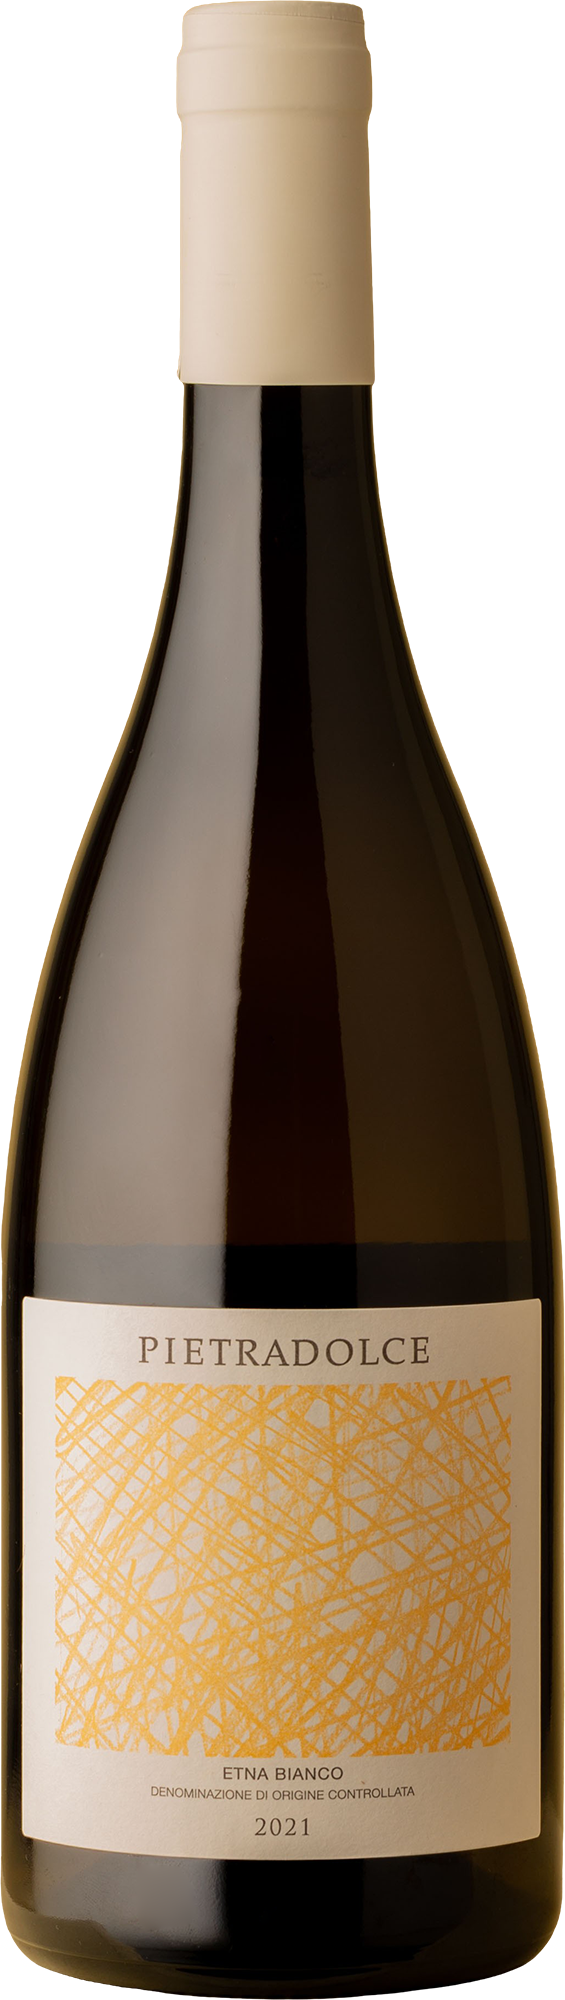 Pietradolce - Carricante 2021 White Wine